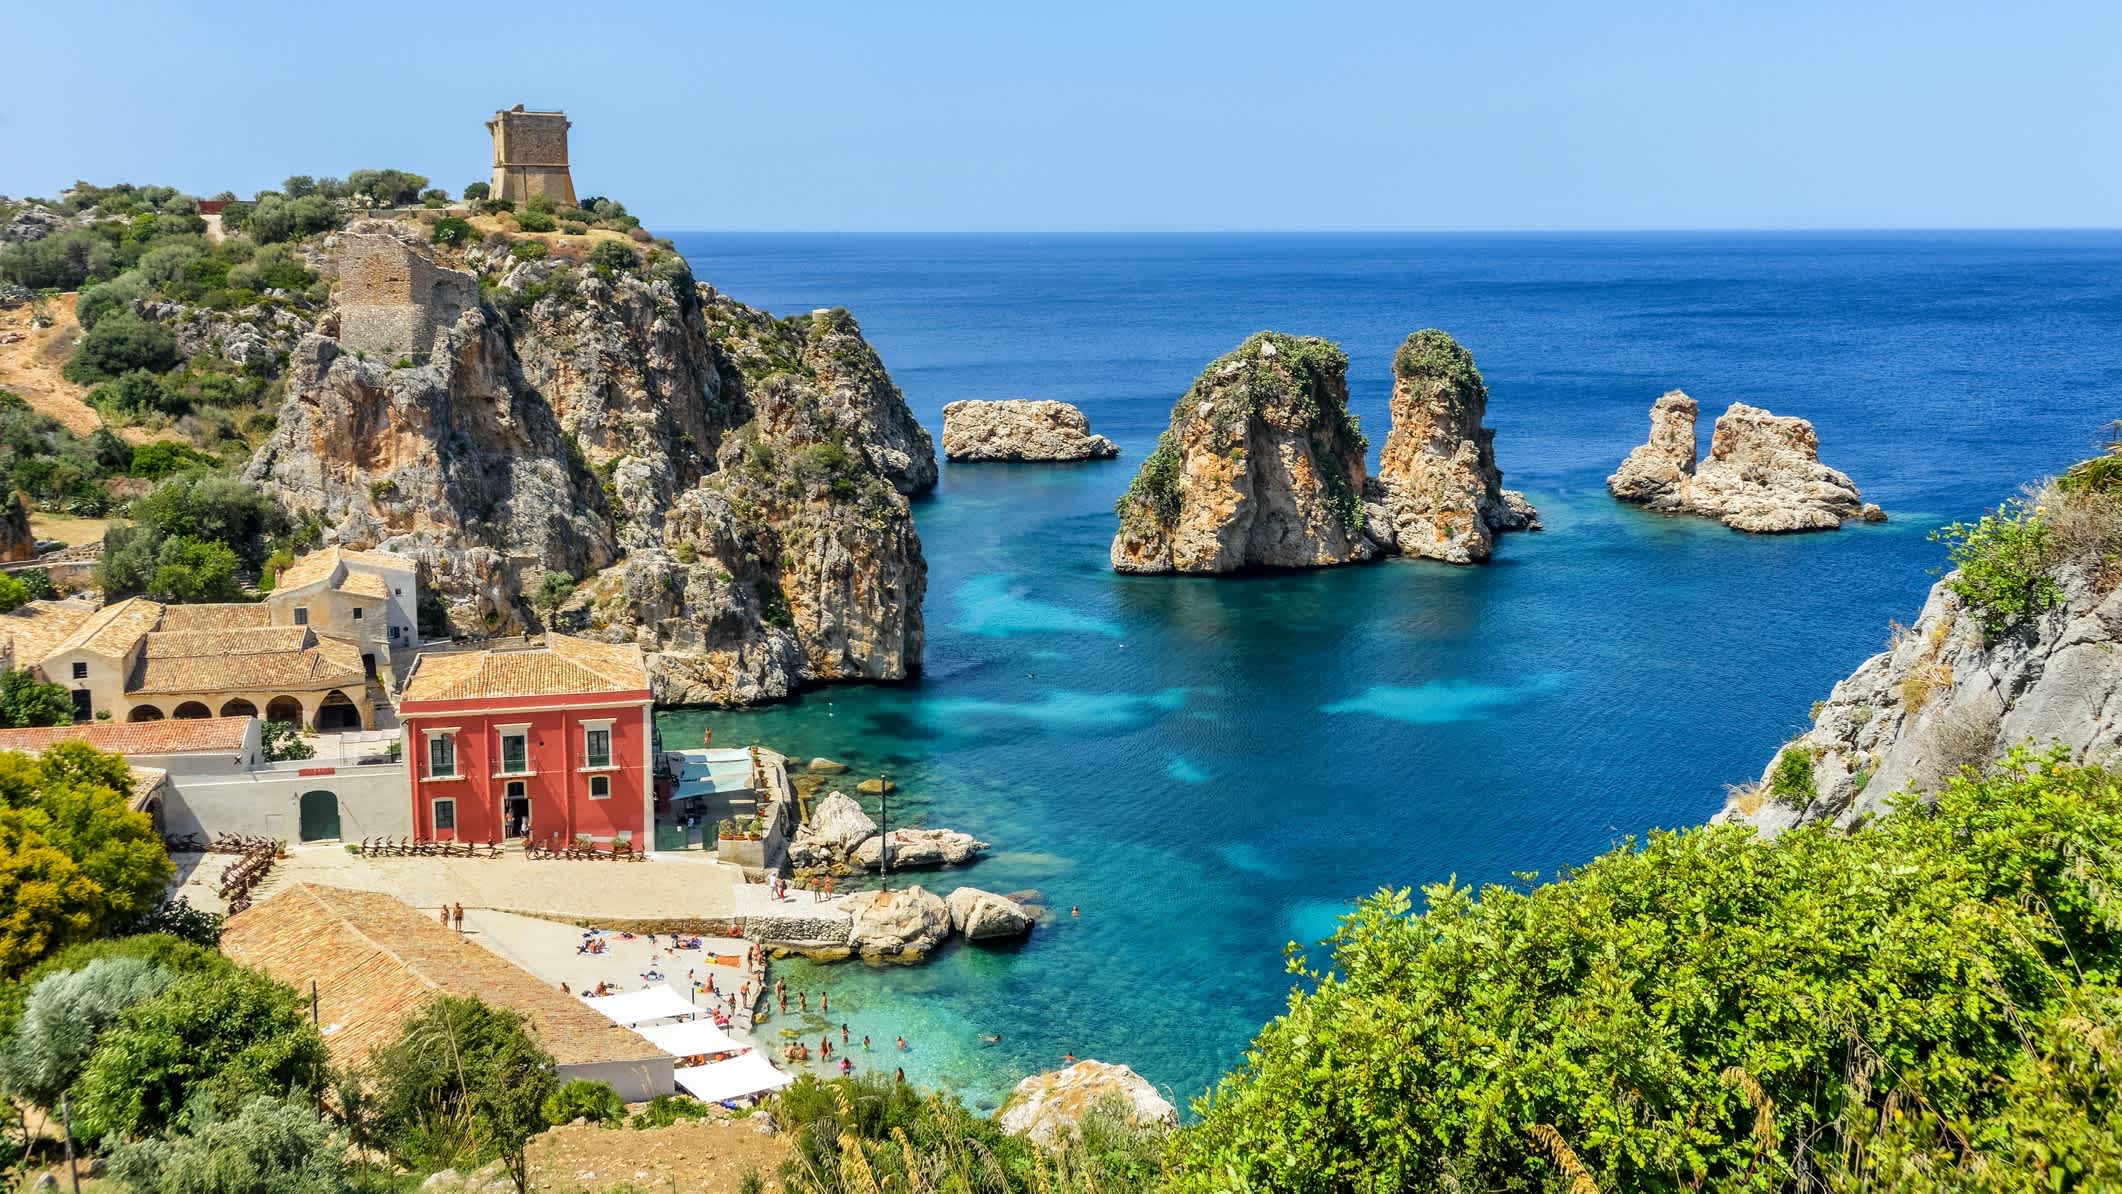 Schöner Strand von Scopello in Sizilien, Italien mit einem roten Haus und natürlicher Vegetation im Bild.